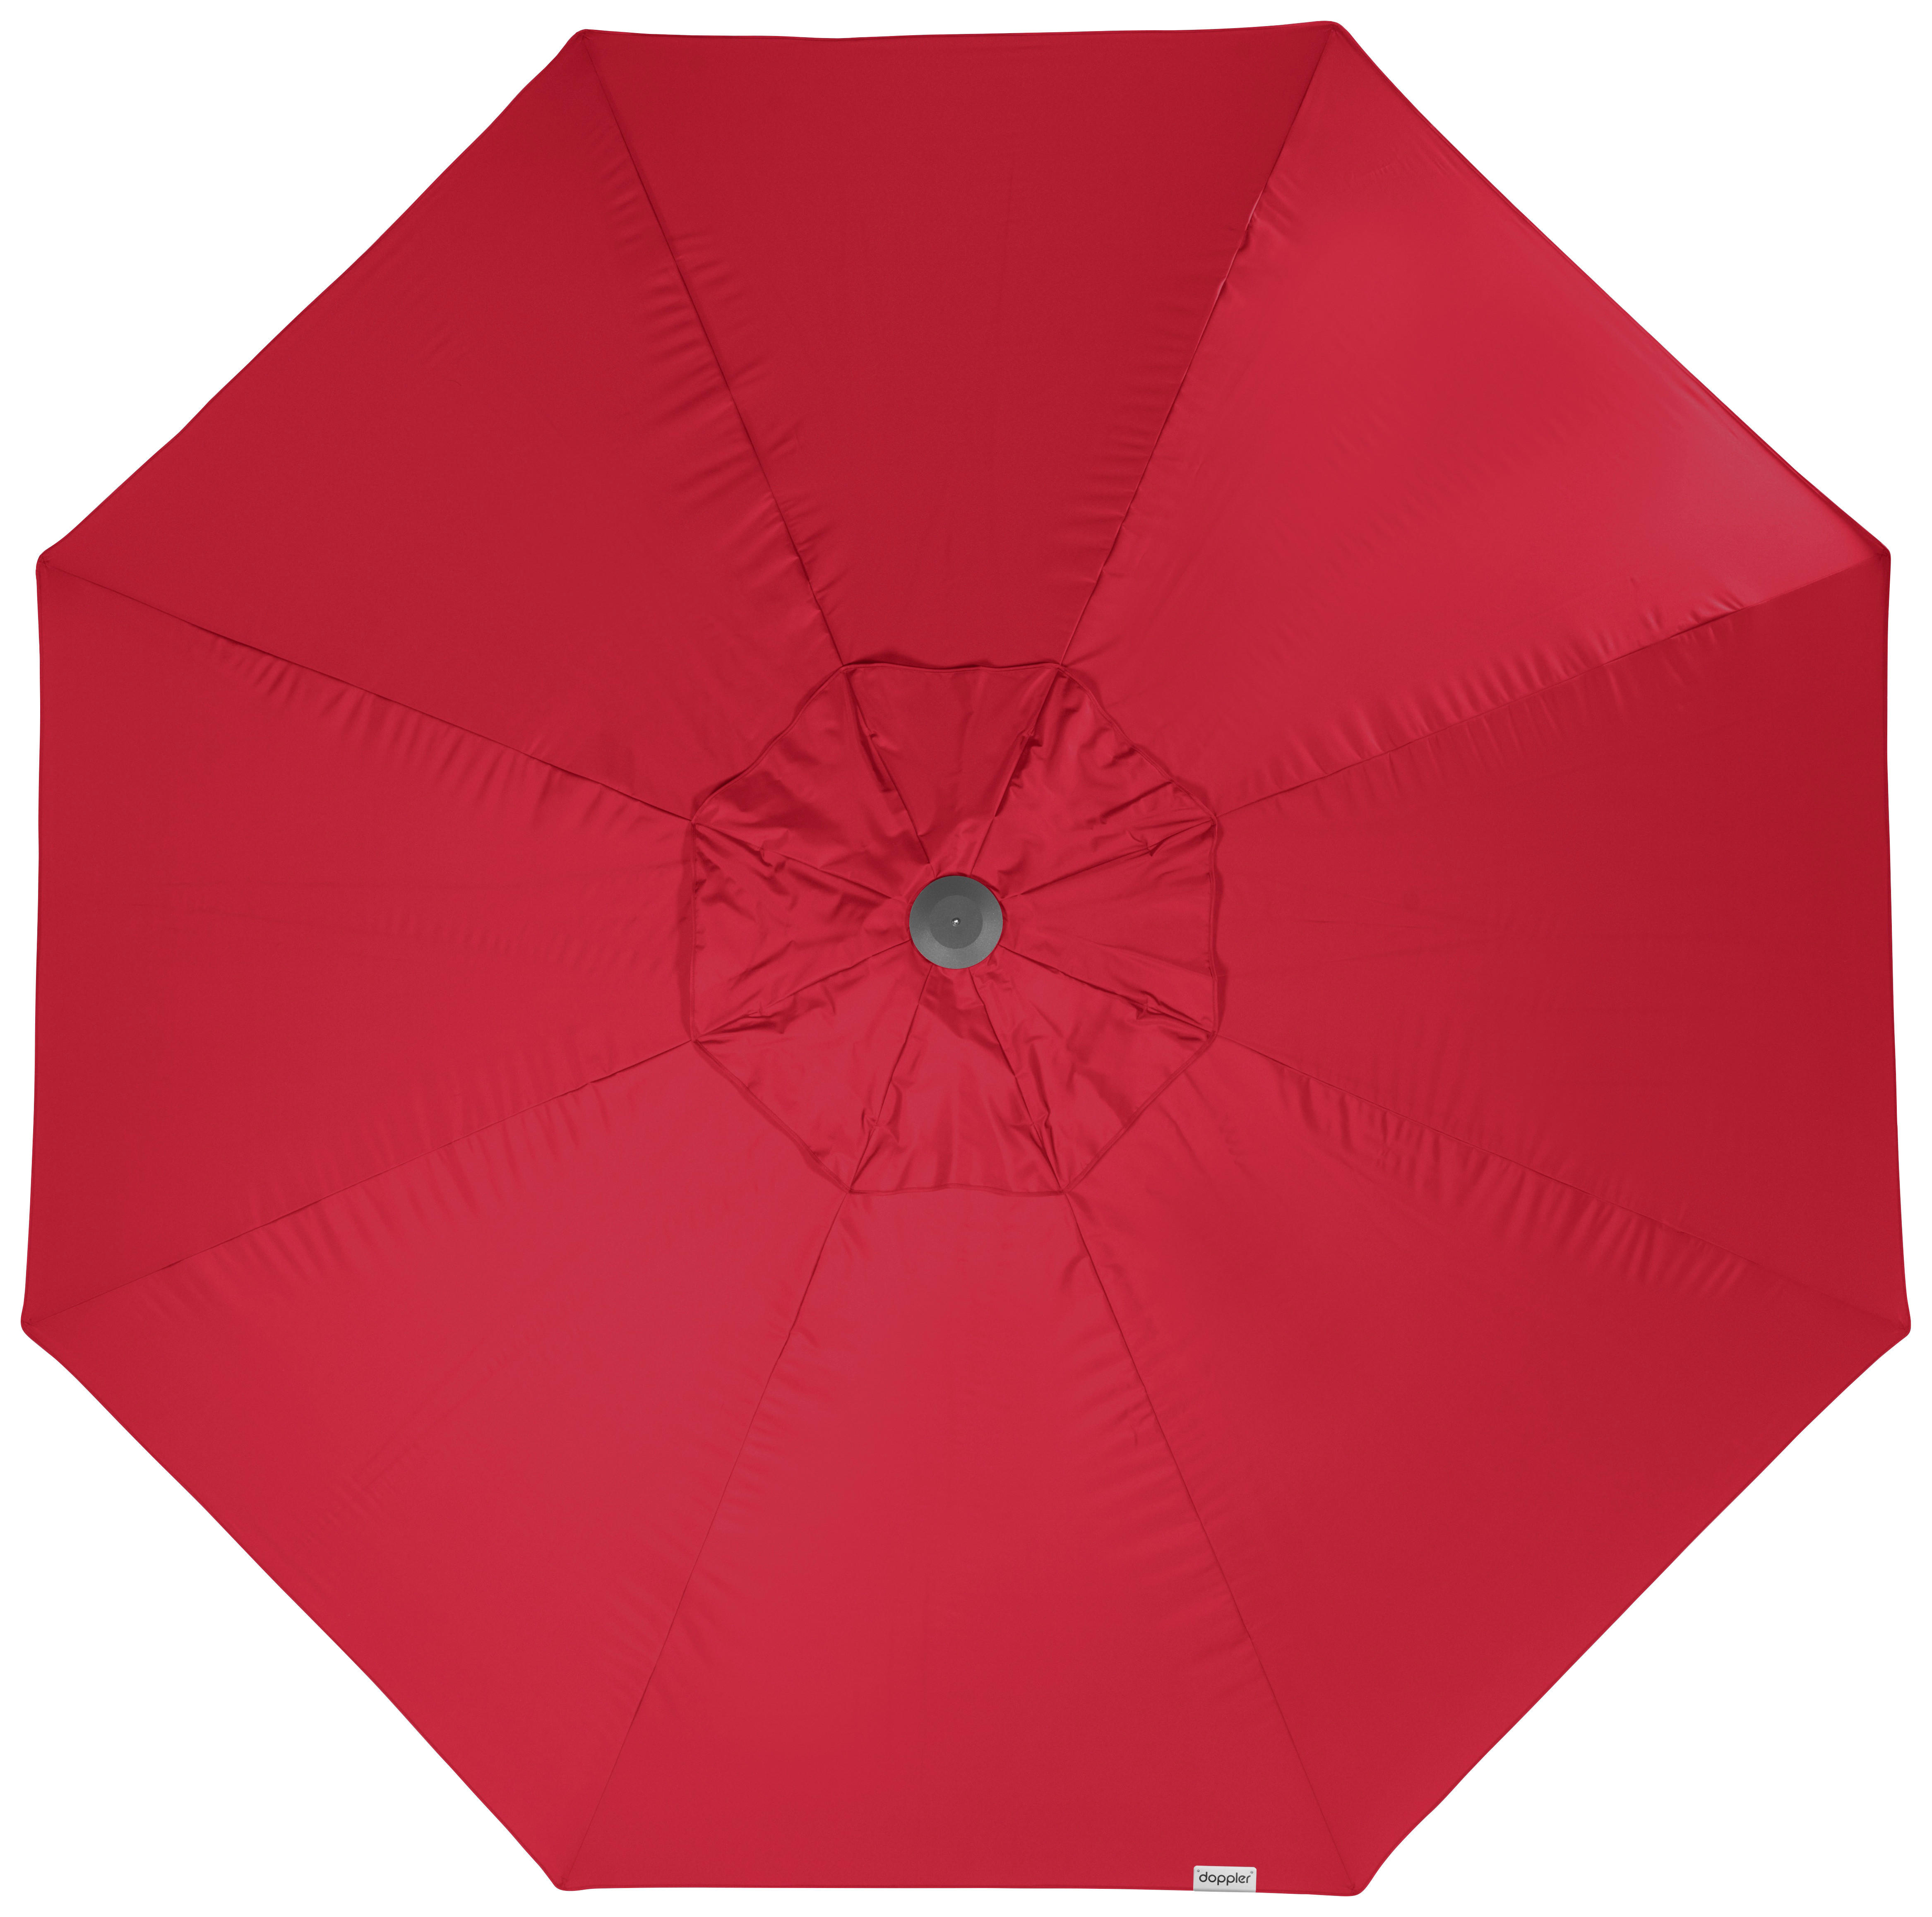 SONNENSCHIRM 400 cm Rot  - Silberfarben/Rot, Basics, Textil/Metall (400/400cm) - Doppler